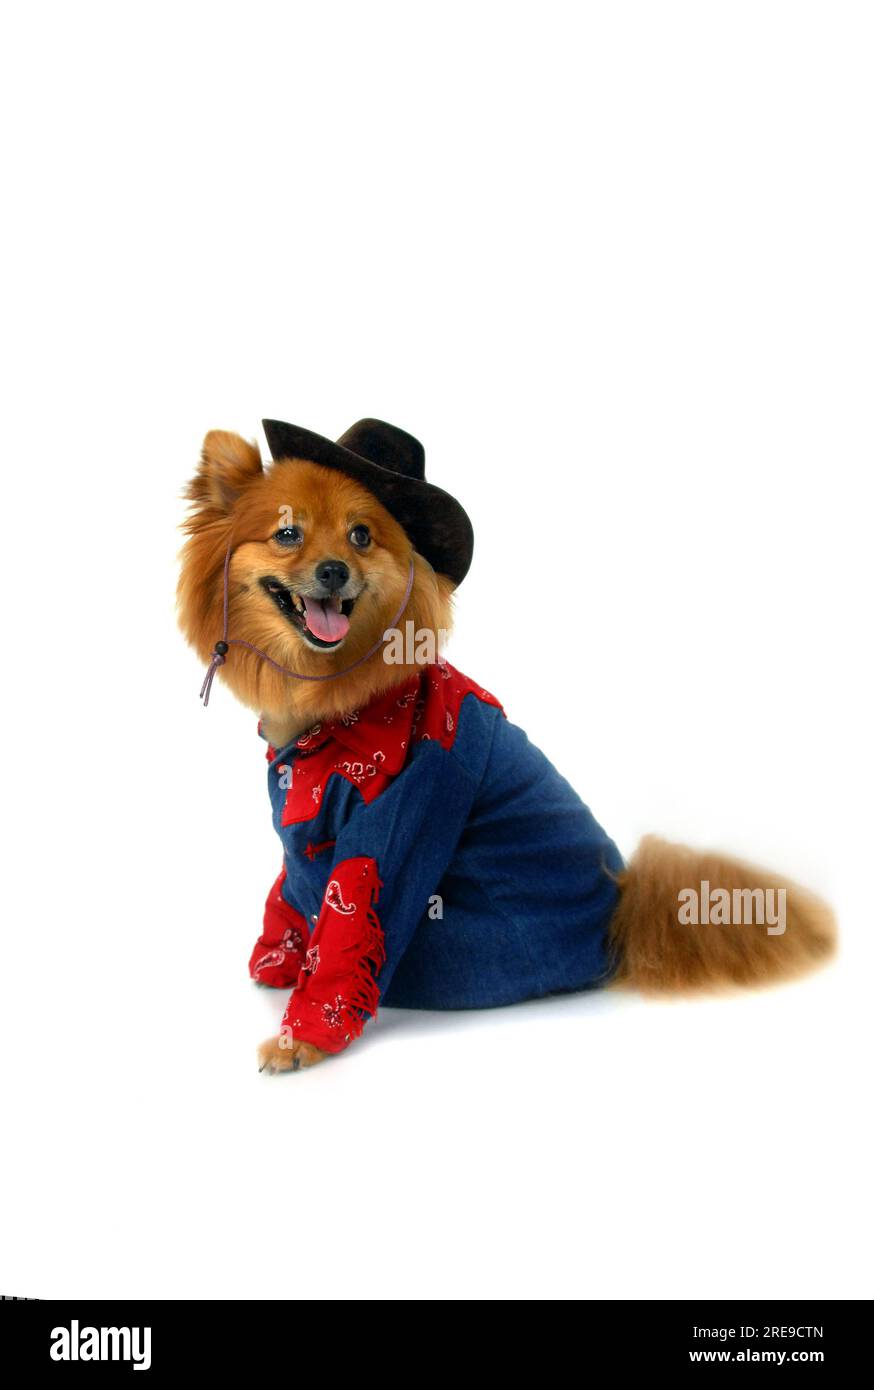 Das westliche Cowboy-Outfit sieht auf diesem Pommern bezaubernd aus. Er trägt einen Cowboyhut, Jeans und ein rotes Coboy-Hemd. Stockfoto